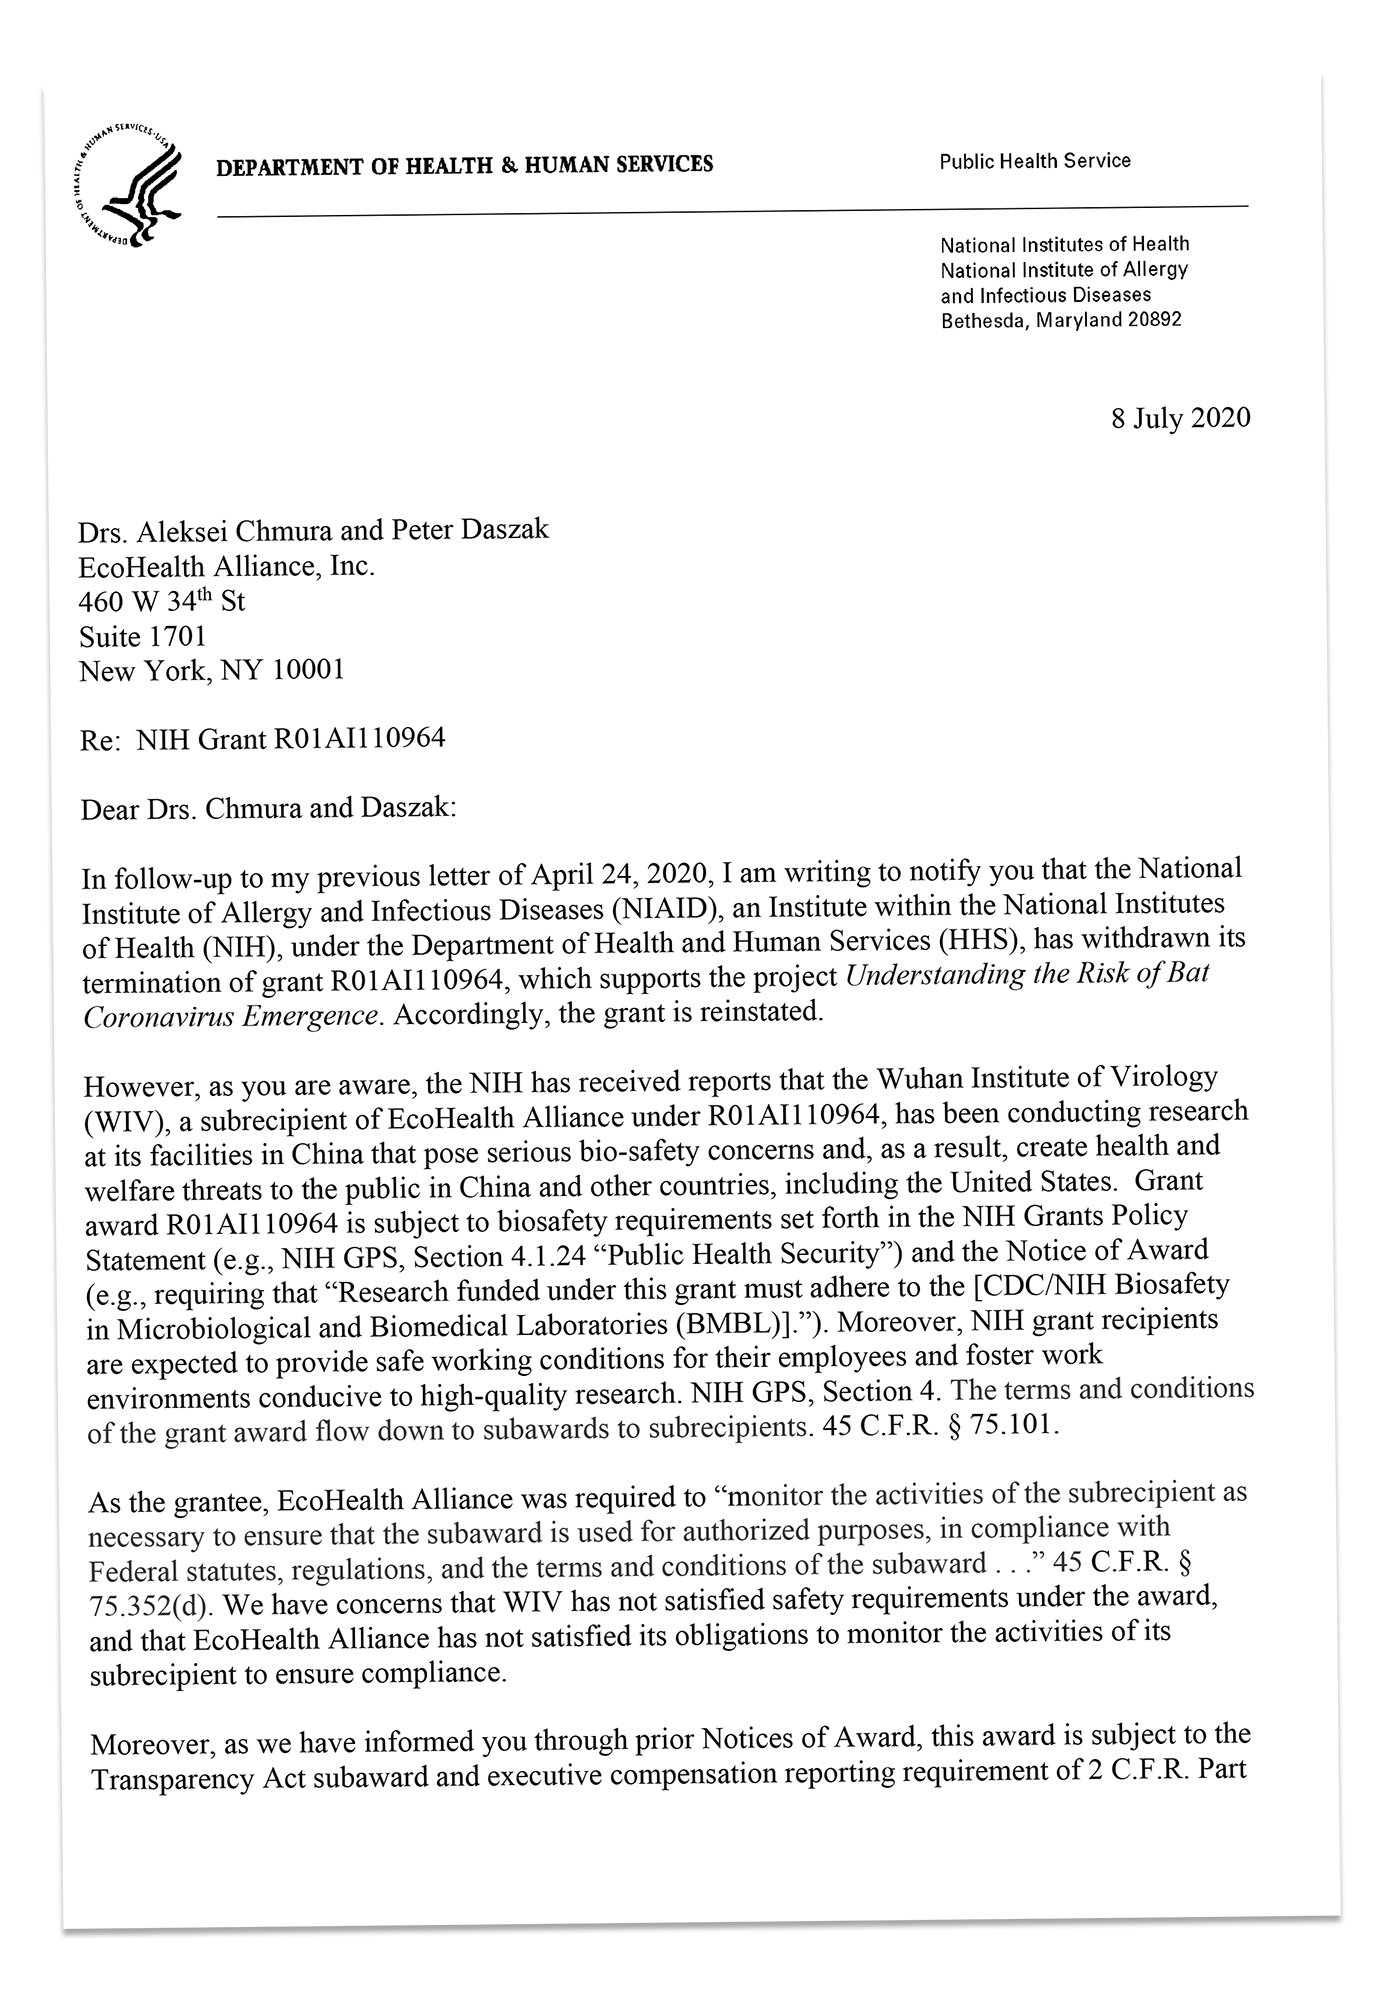 NIH letter daszak chmura grant letter gain of function